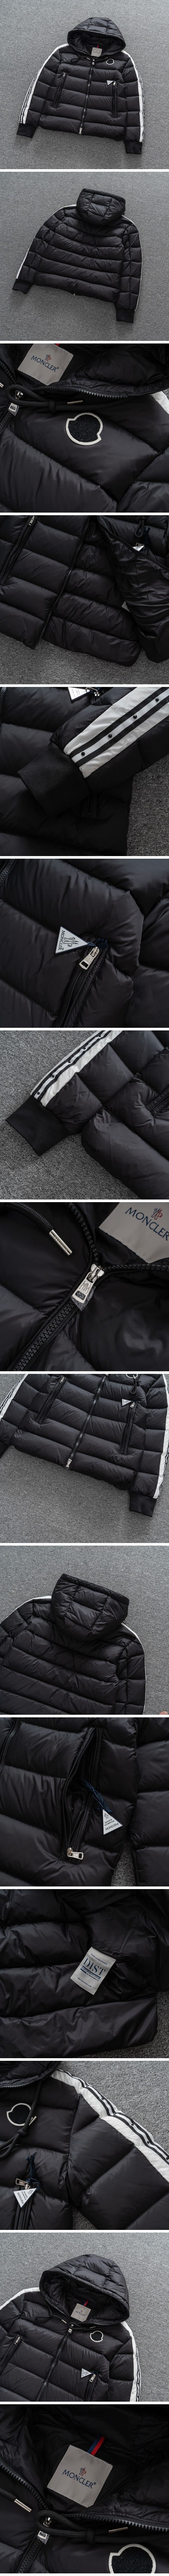 Moncler Short Down Jacket モンクレール ライン ショートダウンジャケット